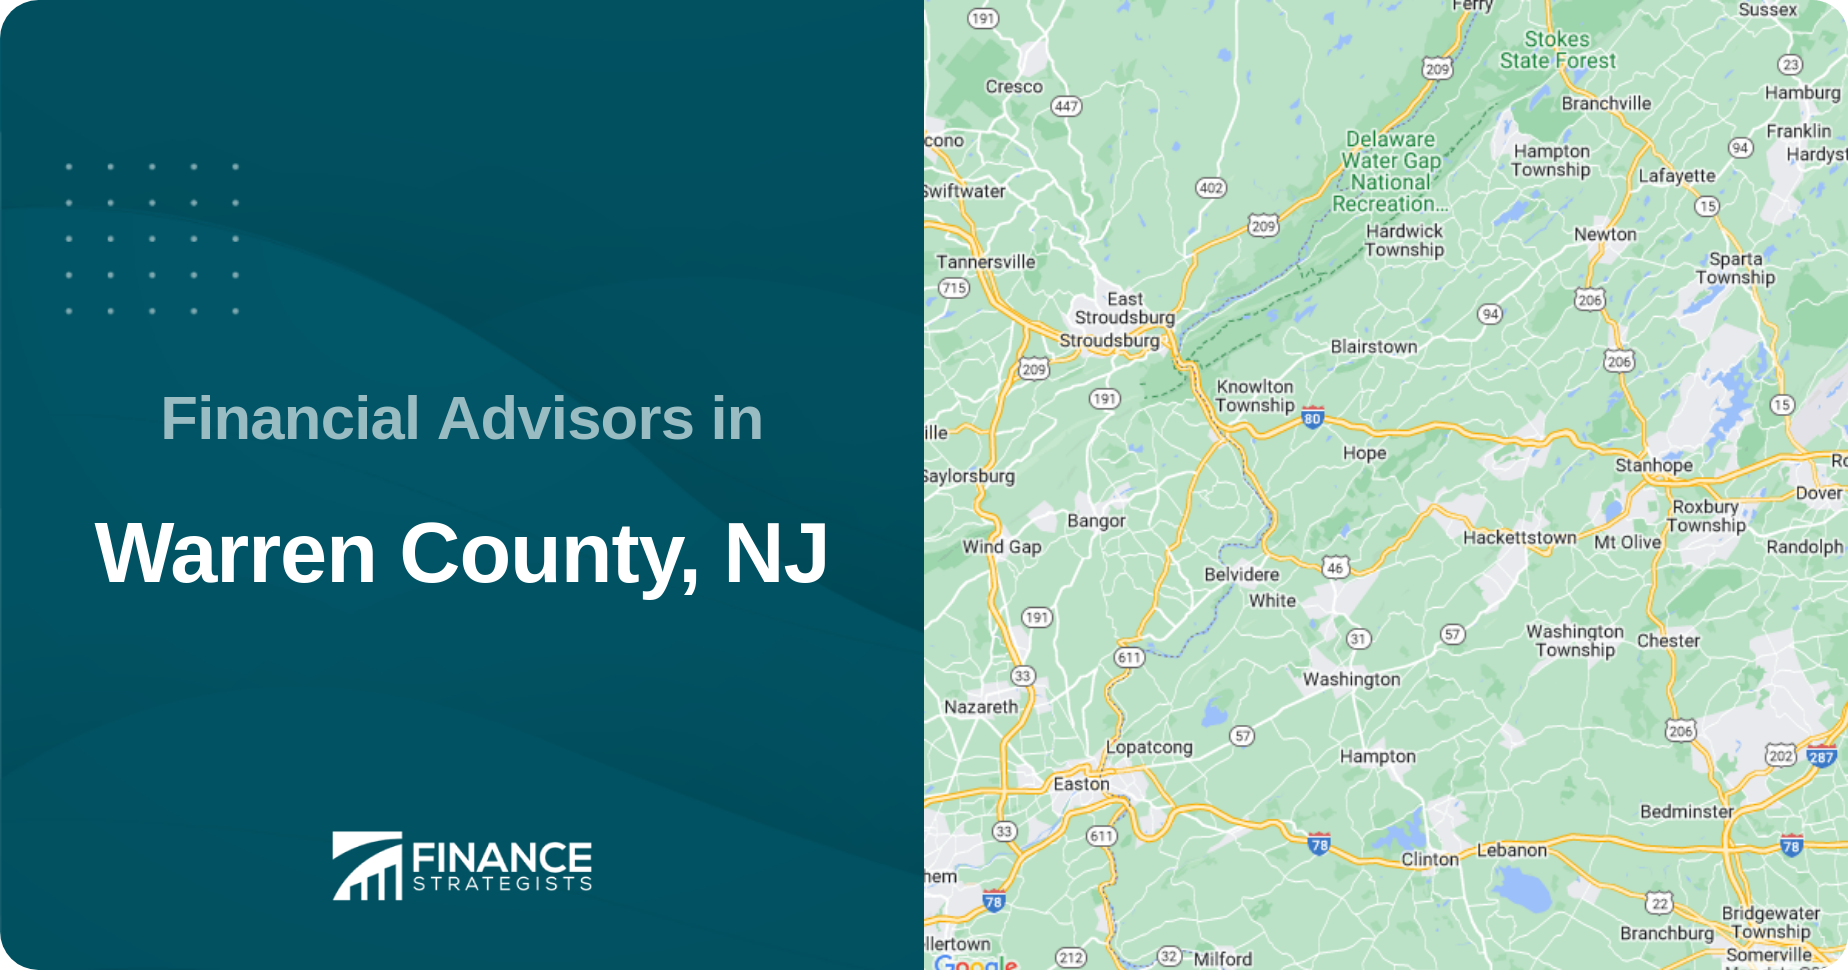 Financial Advisors in Warren County, NJ